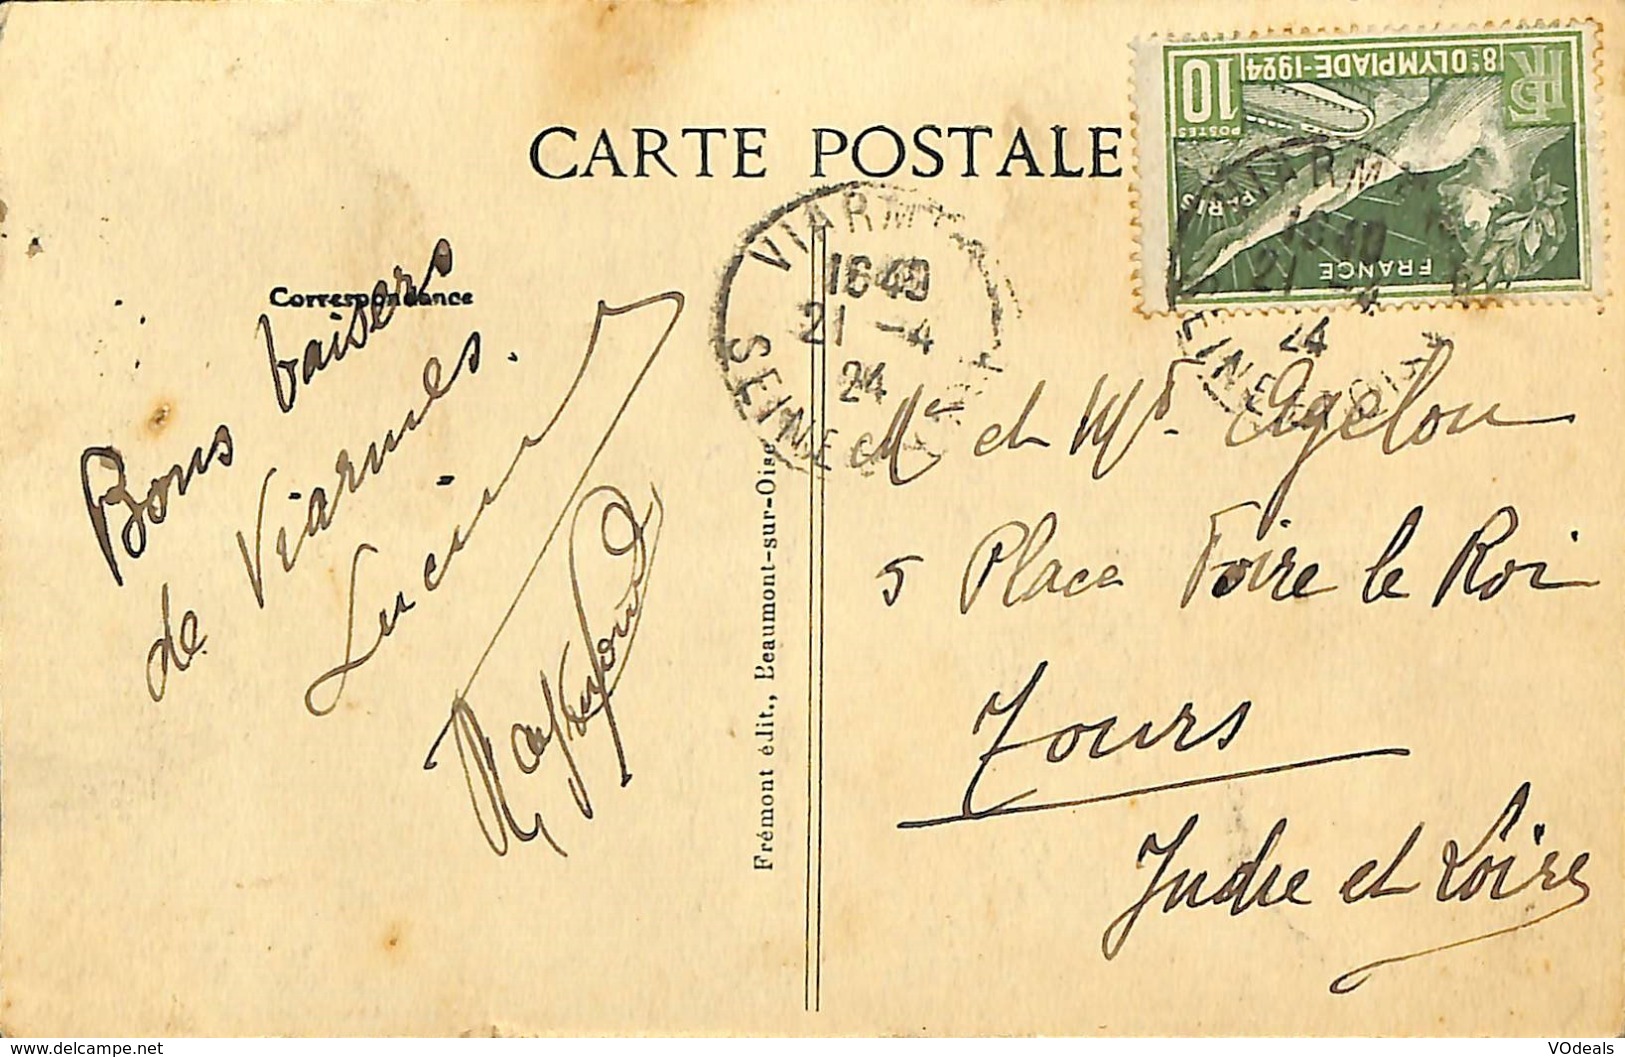 CPA - France - Lot de 10 cartes postales - Lot 09